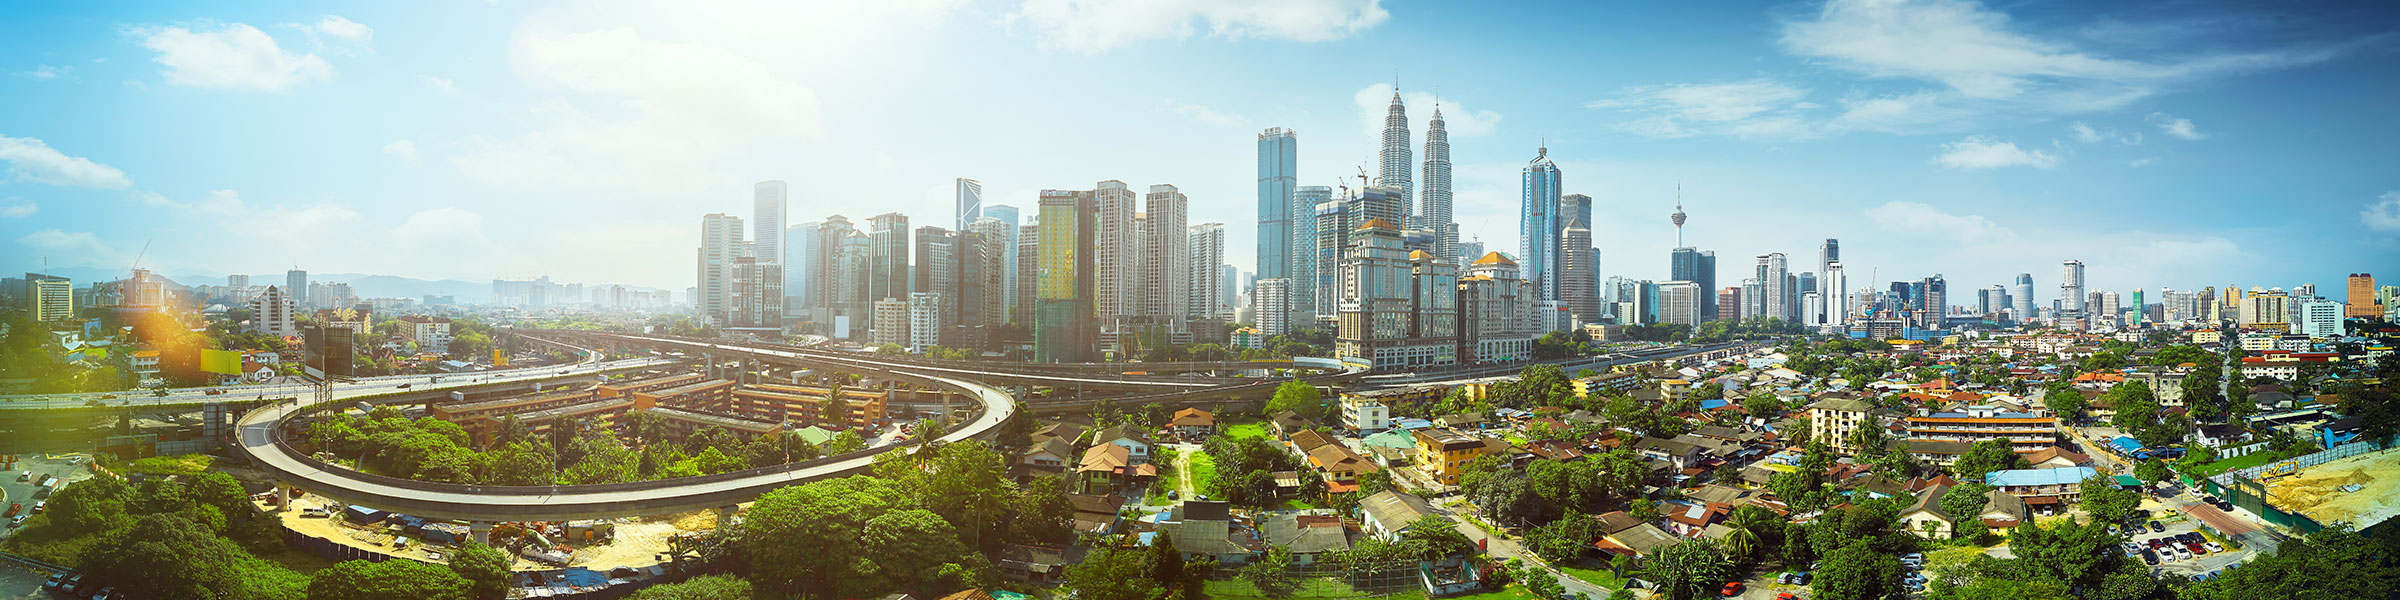 Panorama cityscape Kuala Lumpur city centre, Malaysia